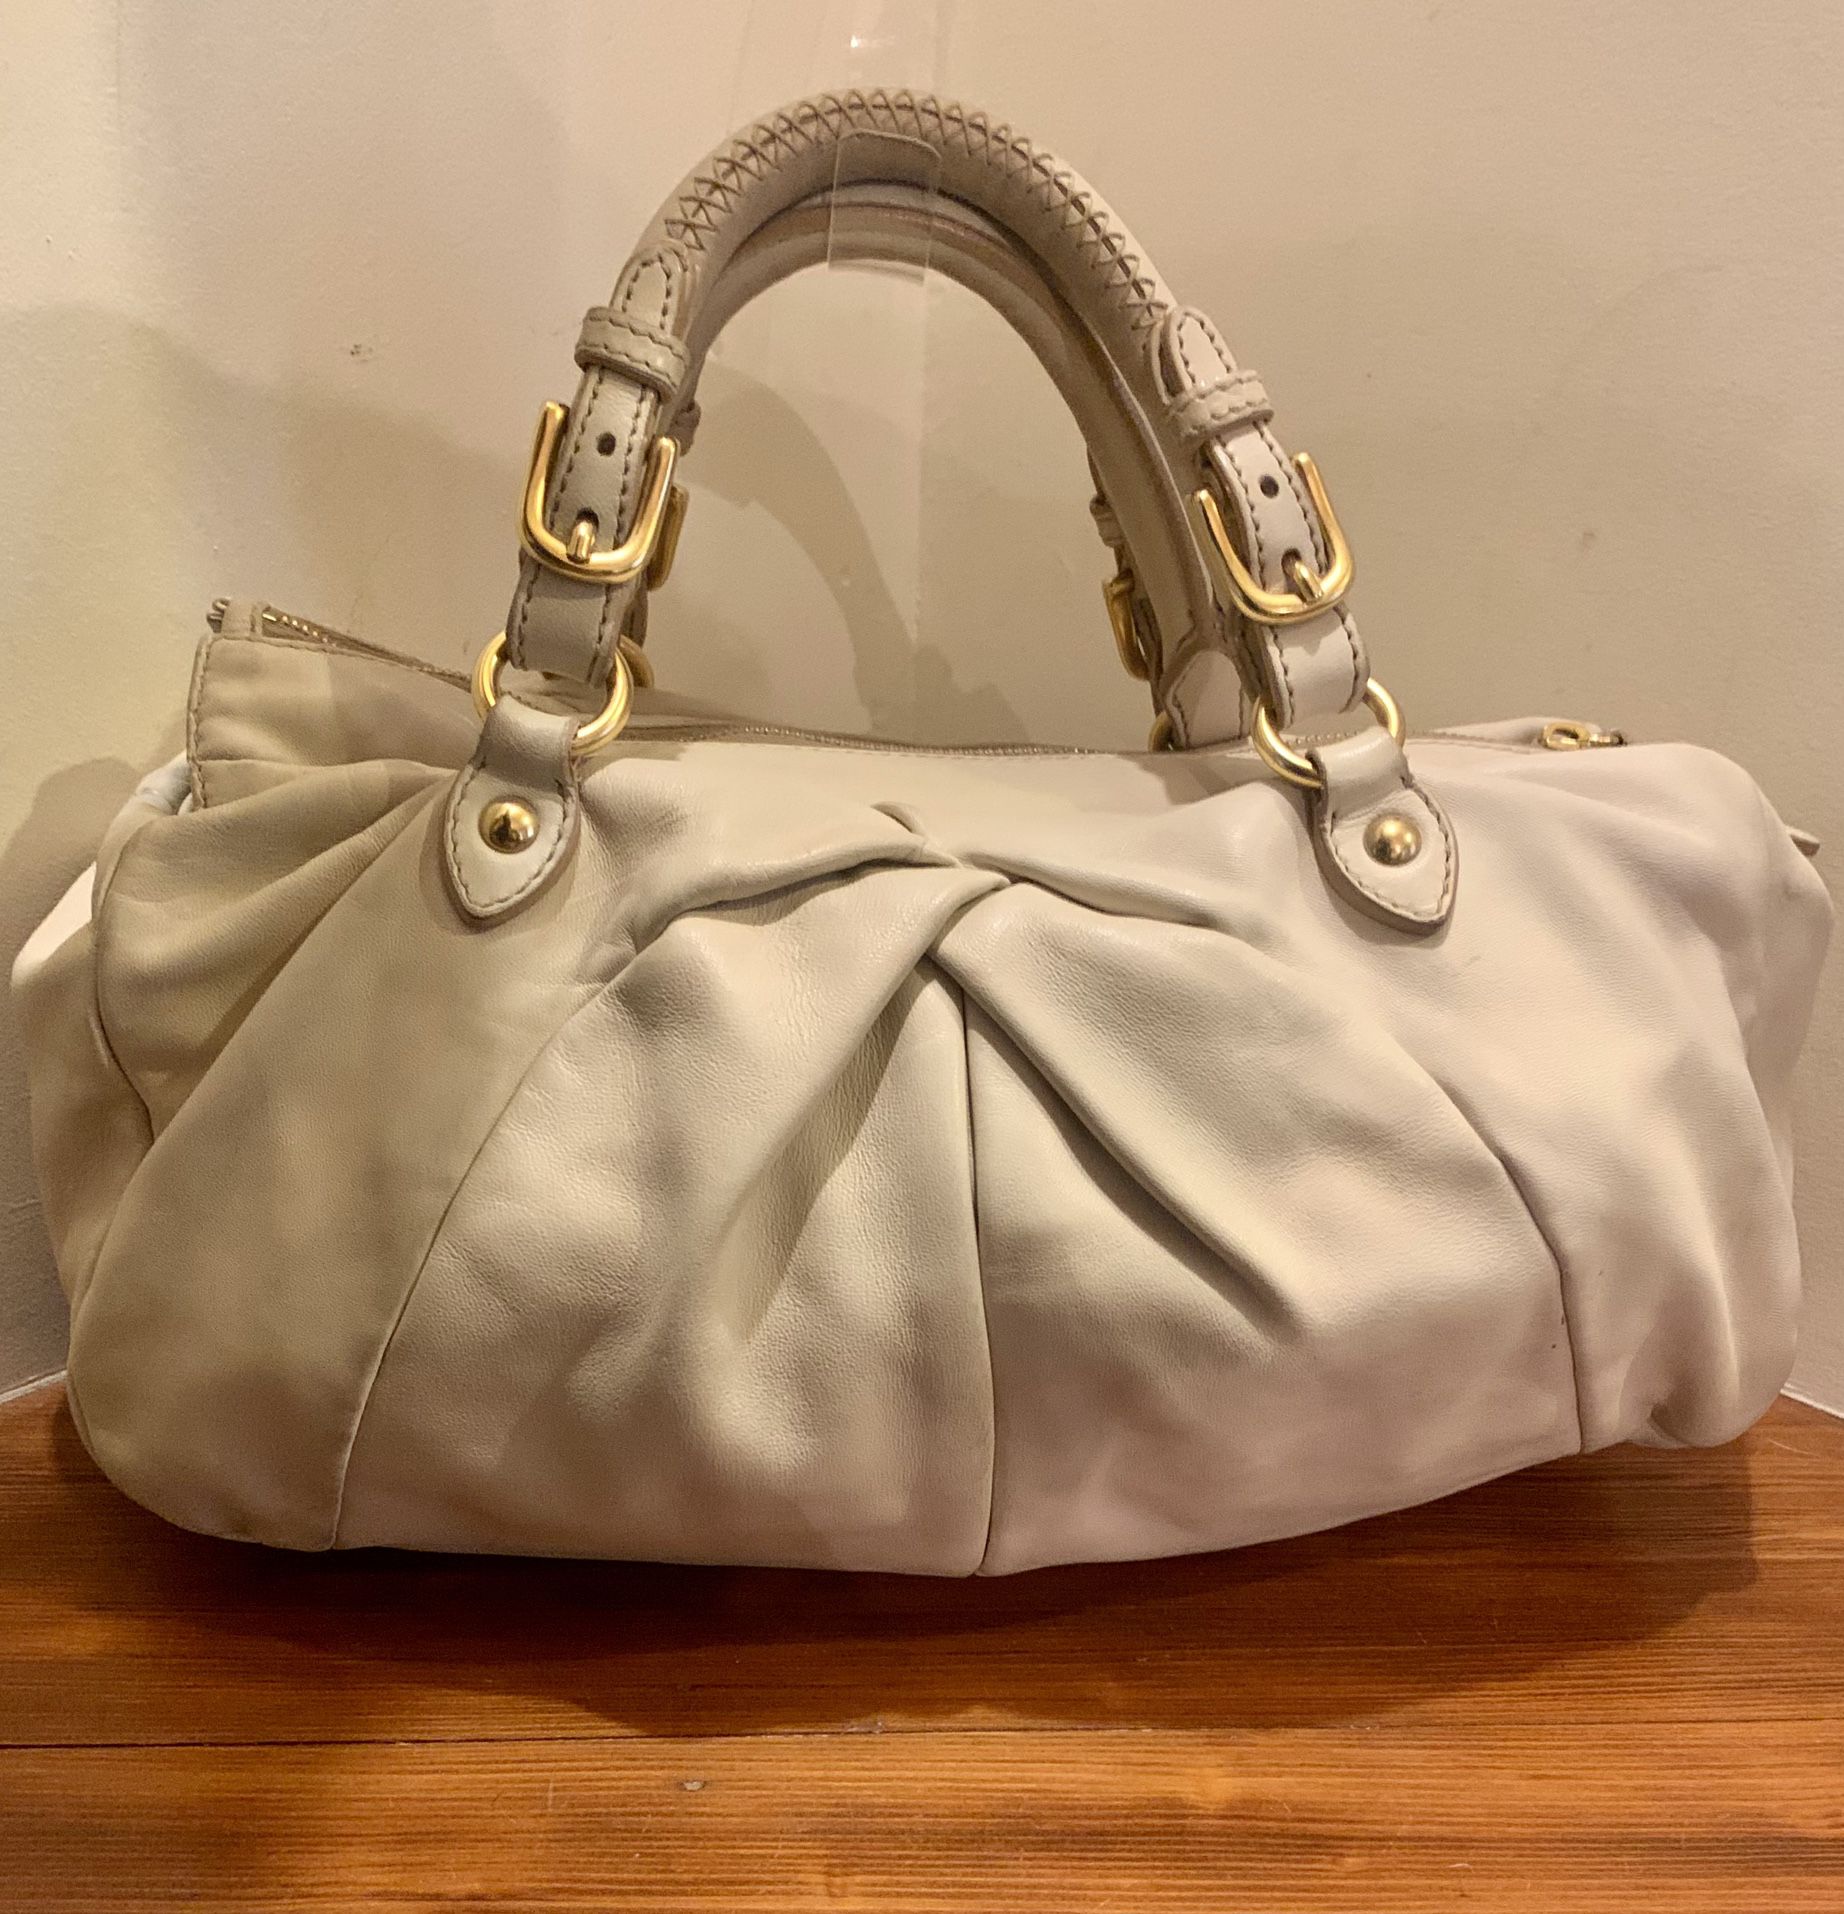 Miu Miu Nappa Leather Handbag W/adjustable Shoulder Strap Originally:$1,199